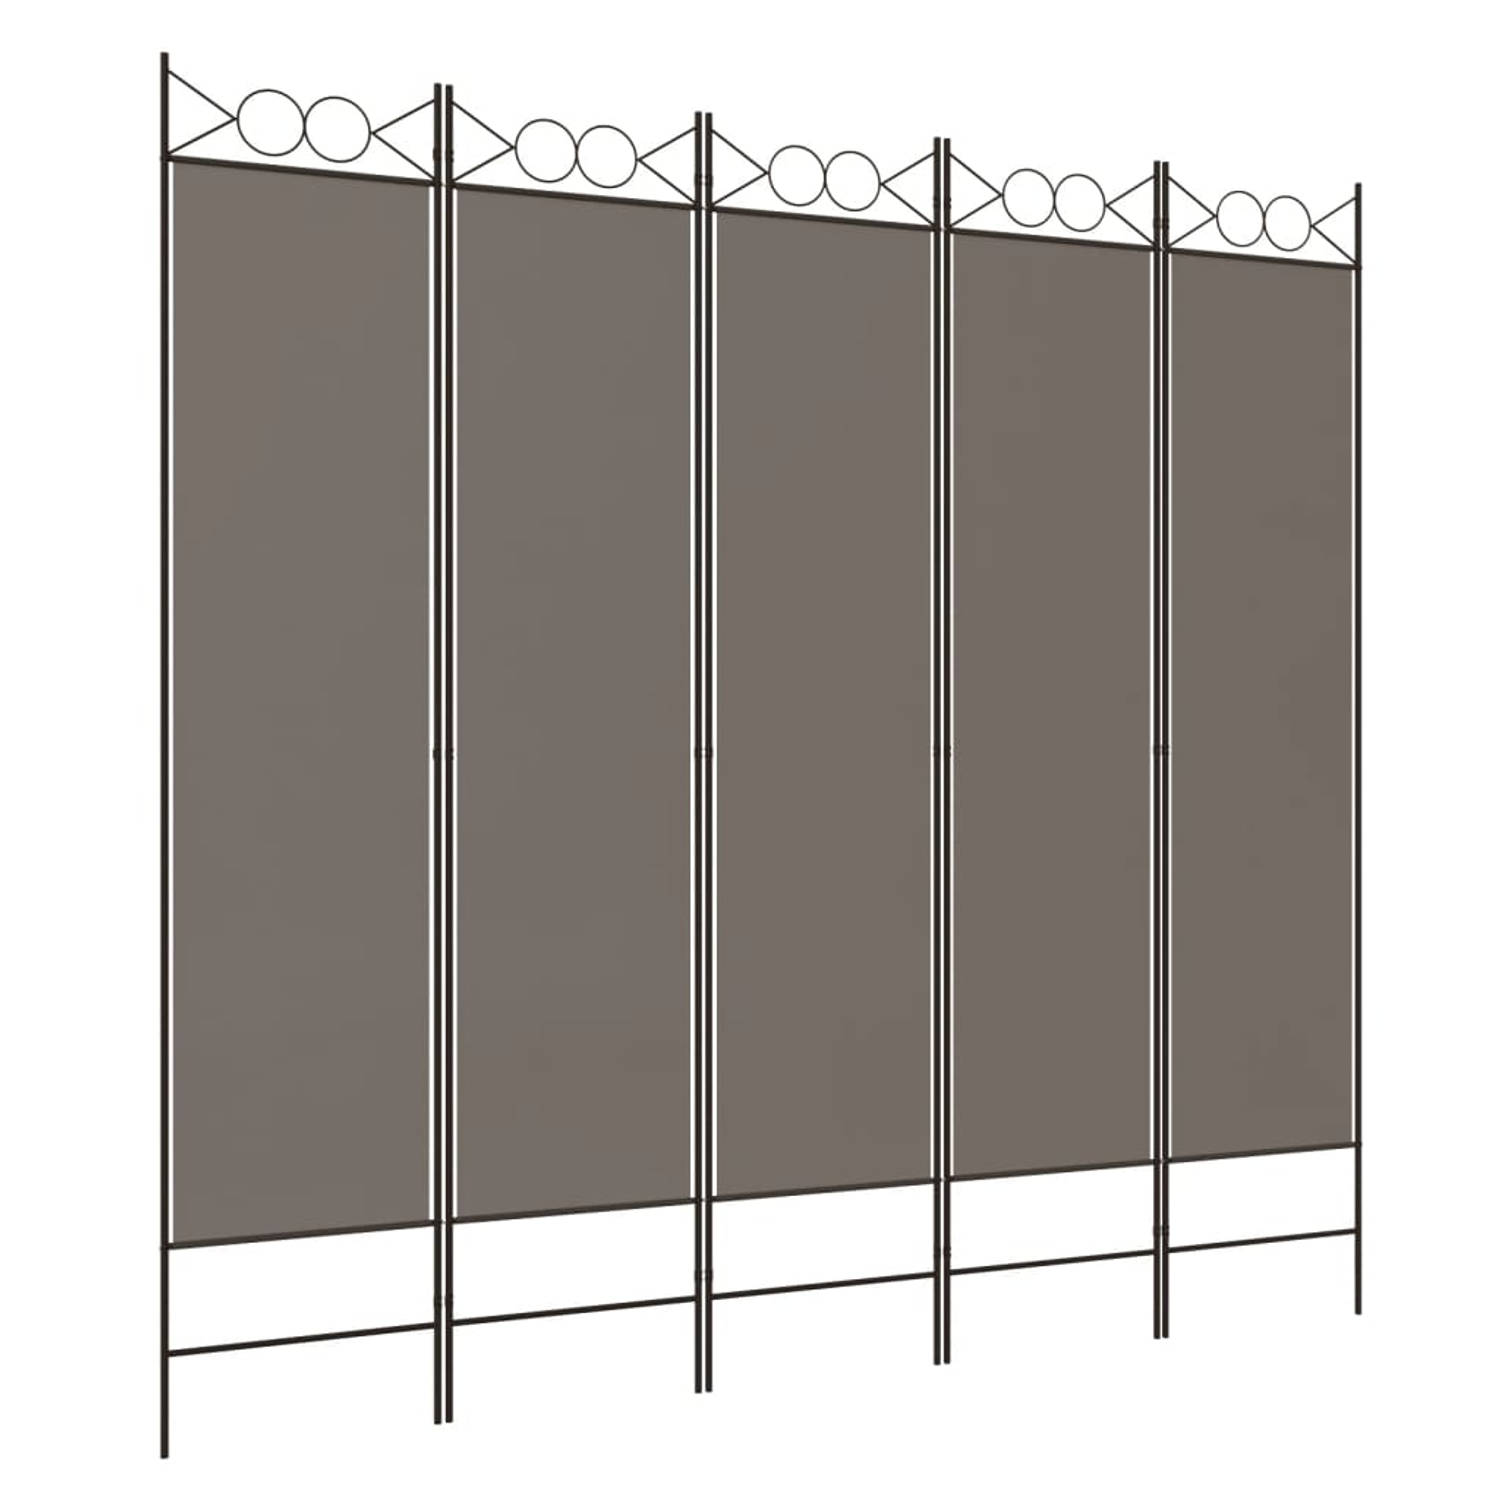 The Living Store Kamerscherm - 5 Panelen - Antraciet - 200 x 200 cm - Duurzaam materiaal